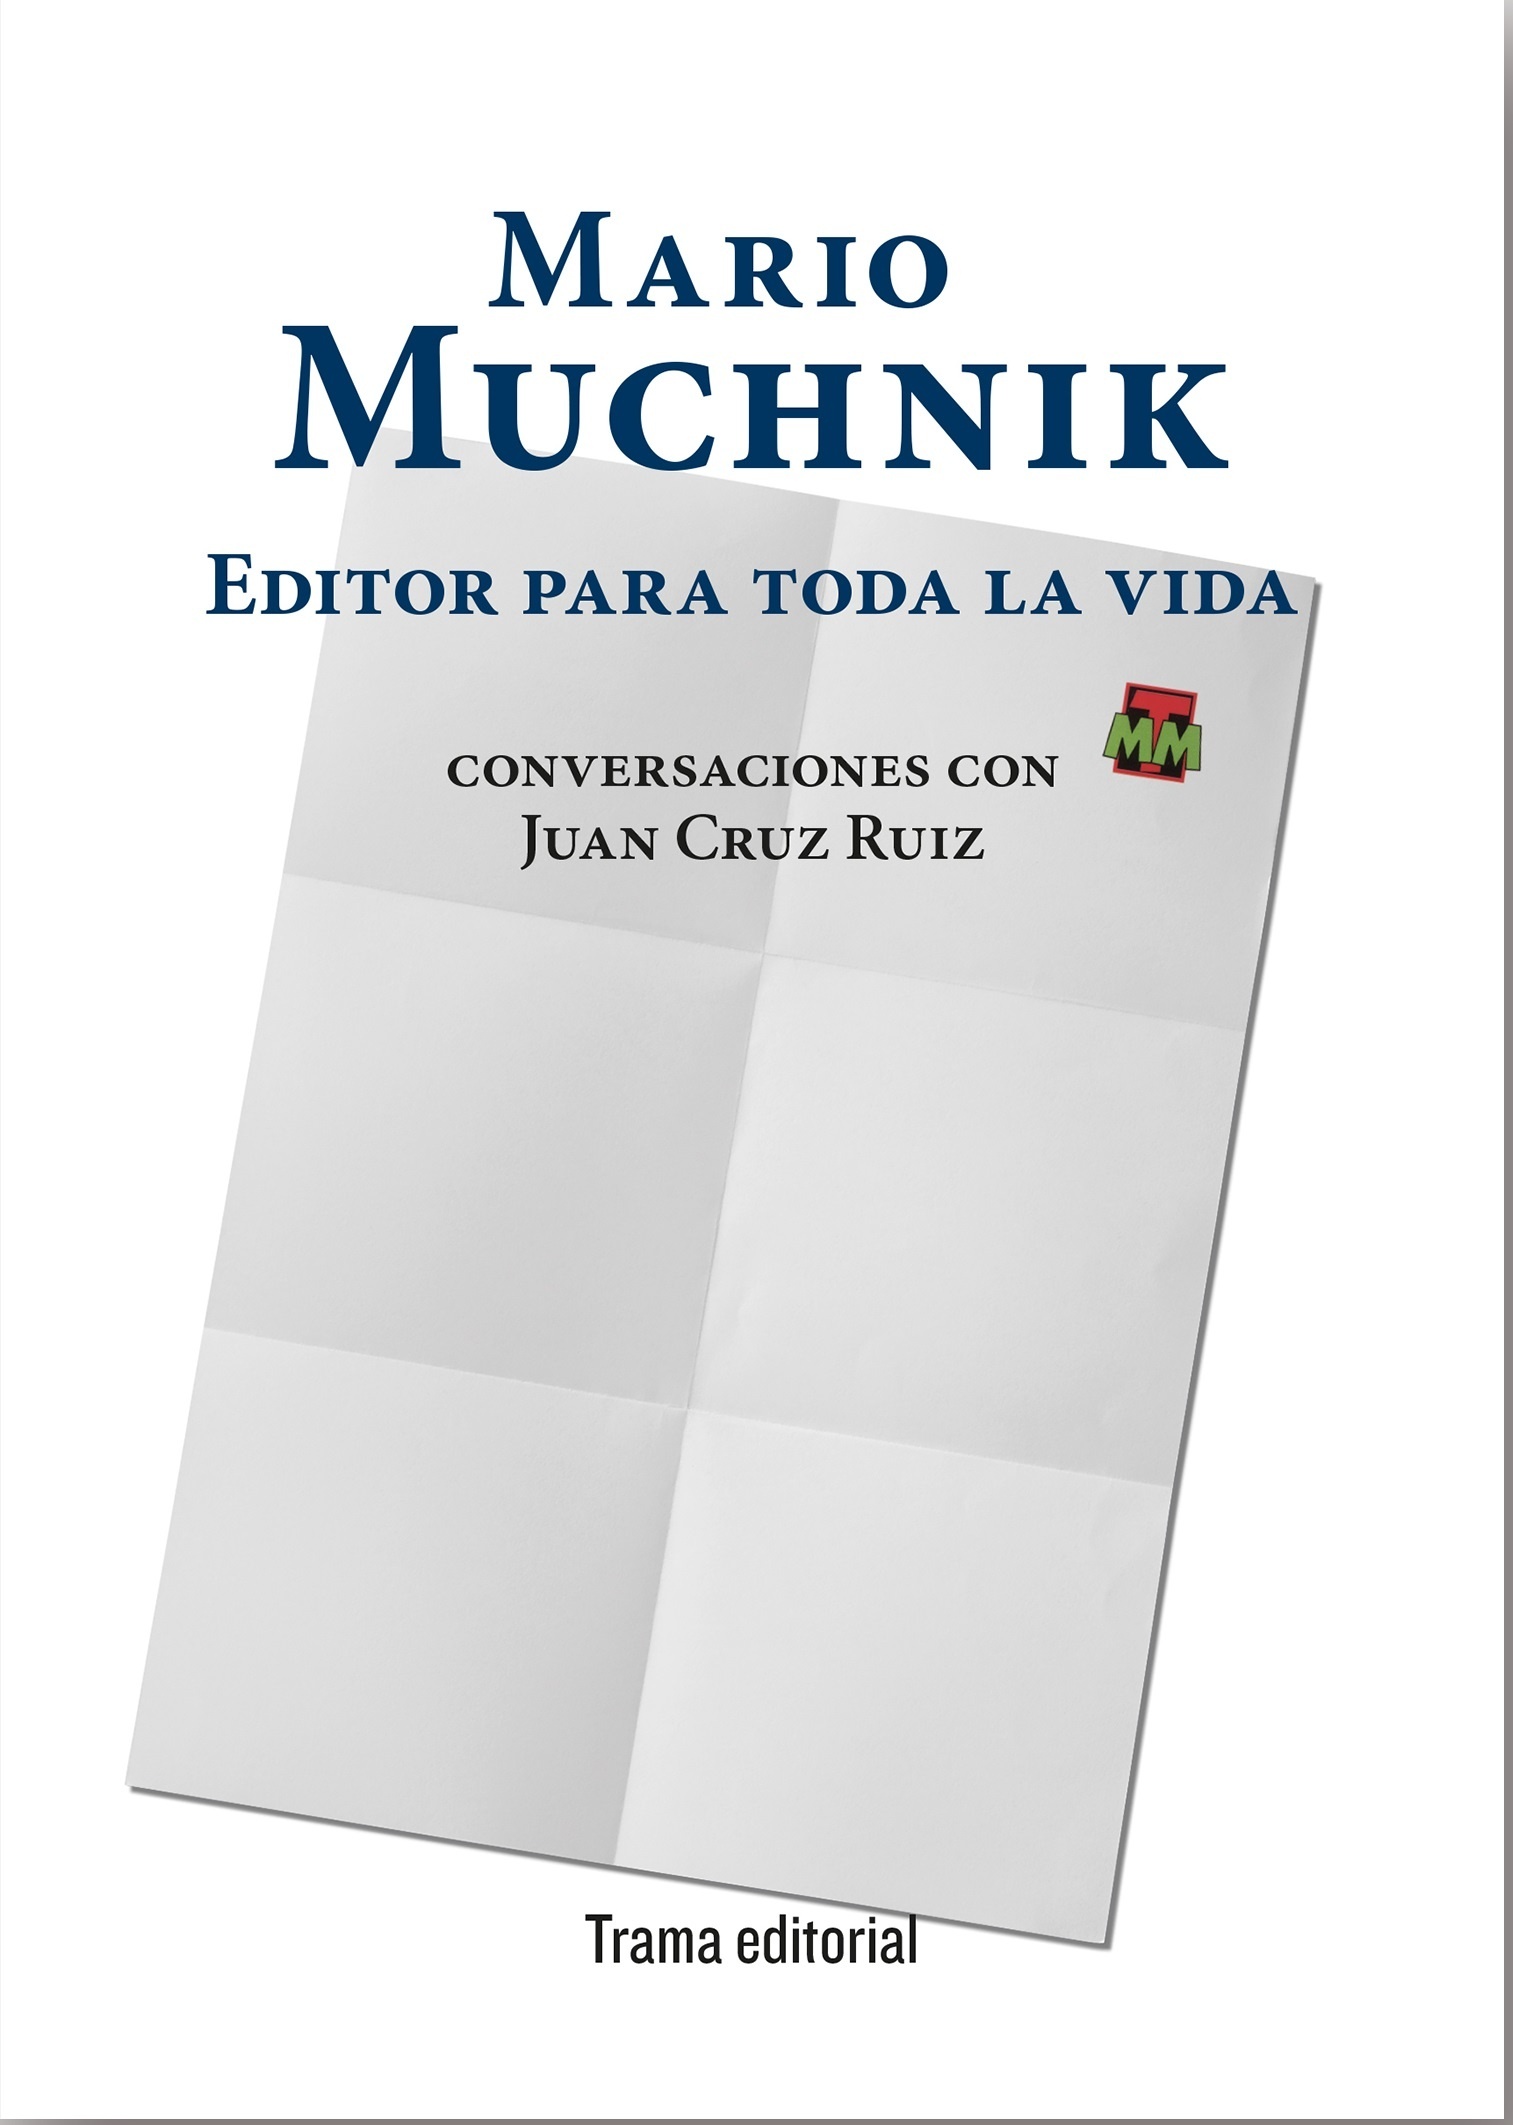 Mario Muchnik. Editor para toda la vida "Conversaciones con Juan Cruz Ruiz"